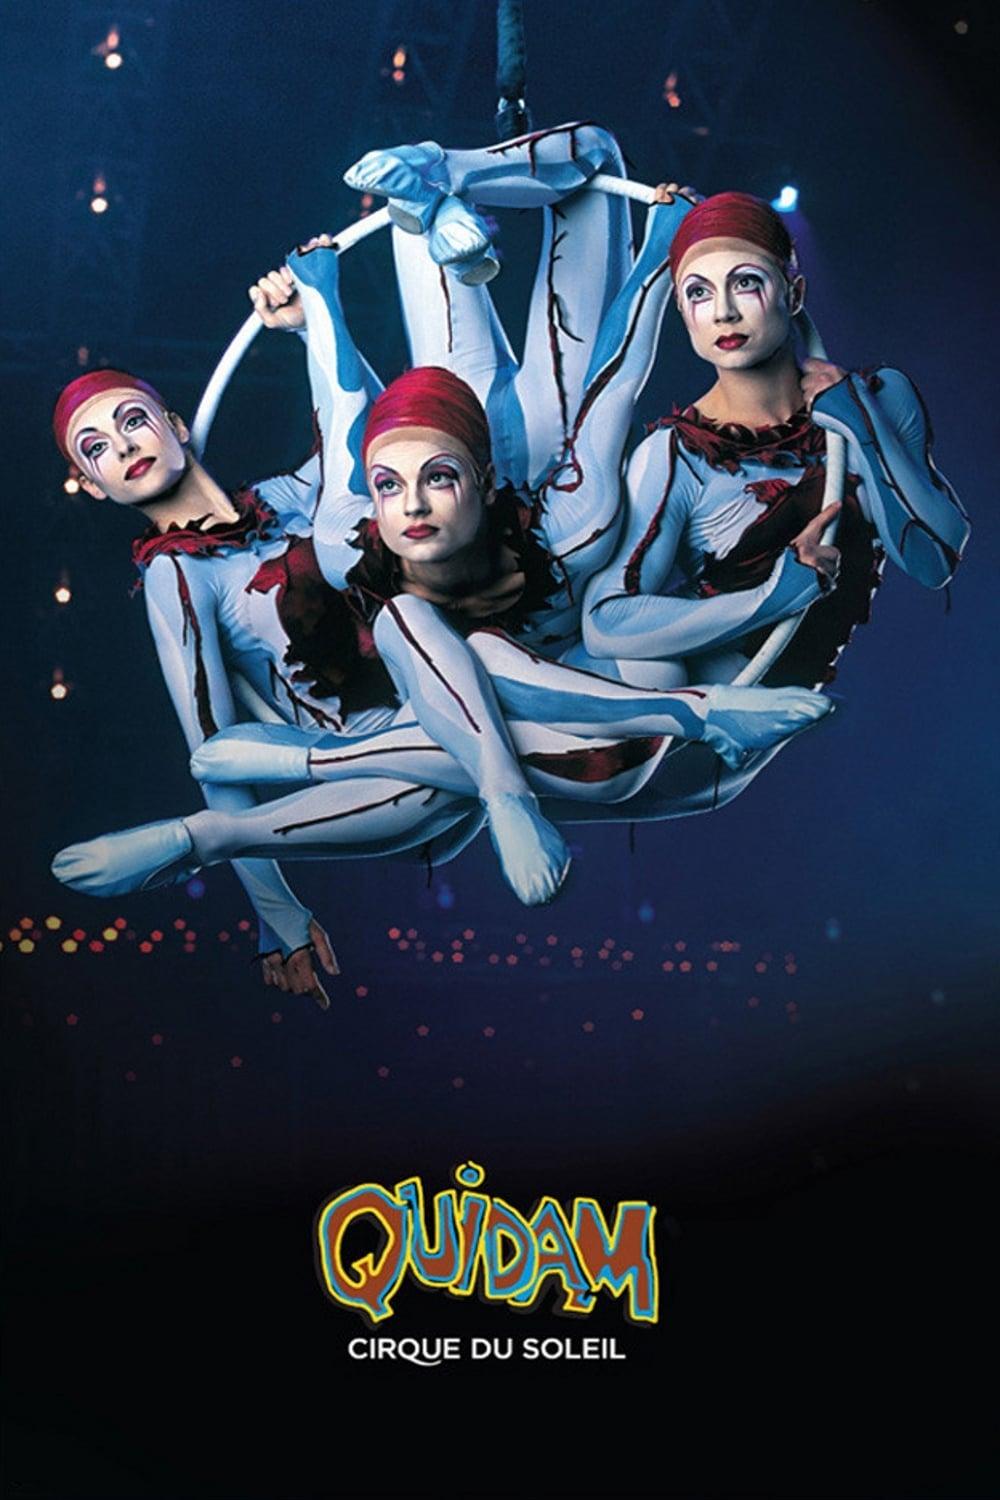 Cirque du Soleil: Quidam poster